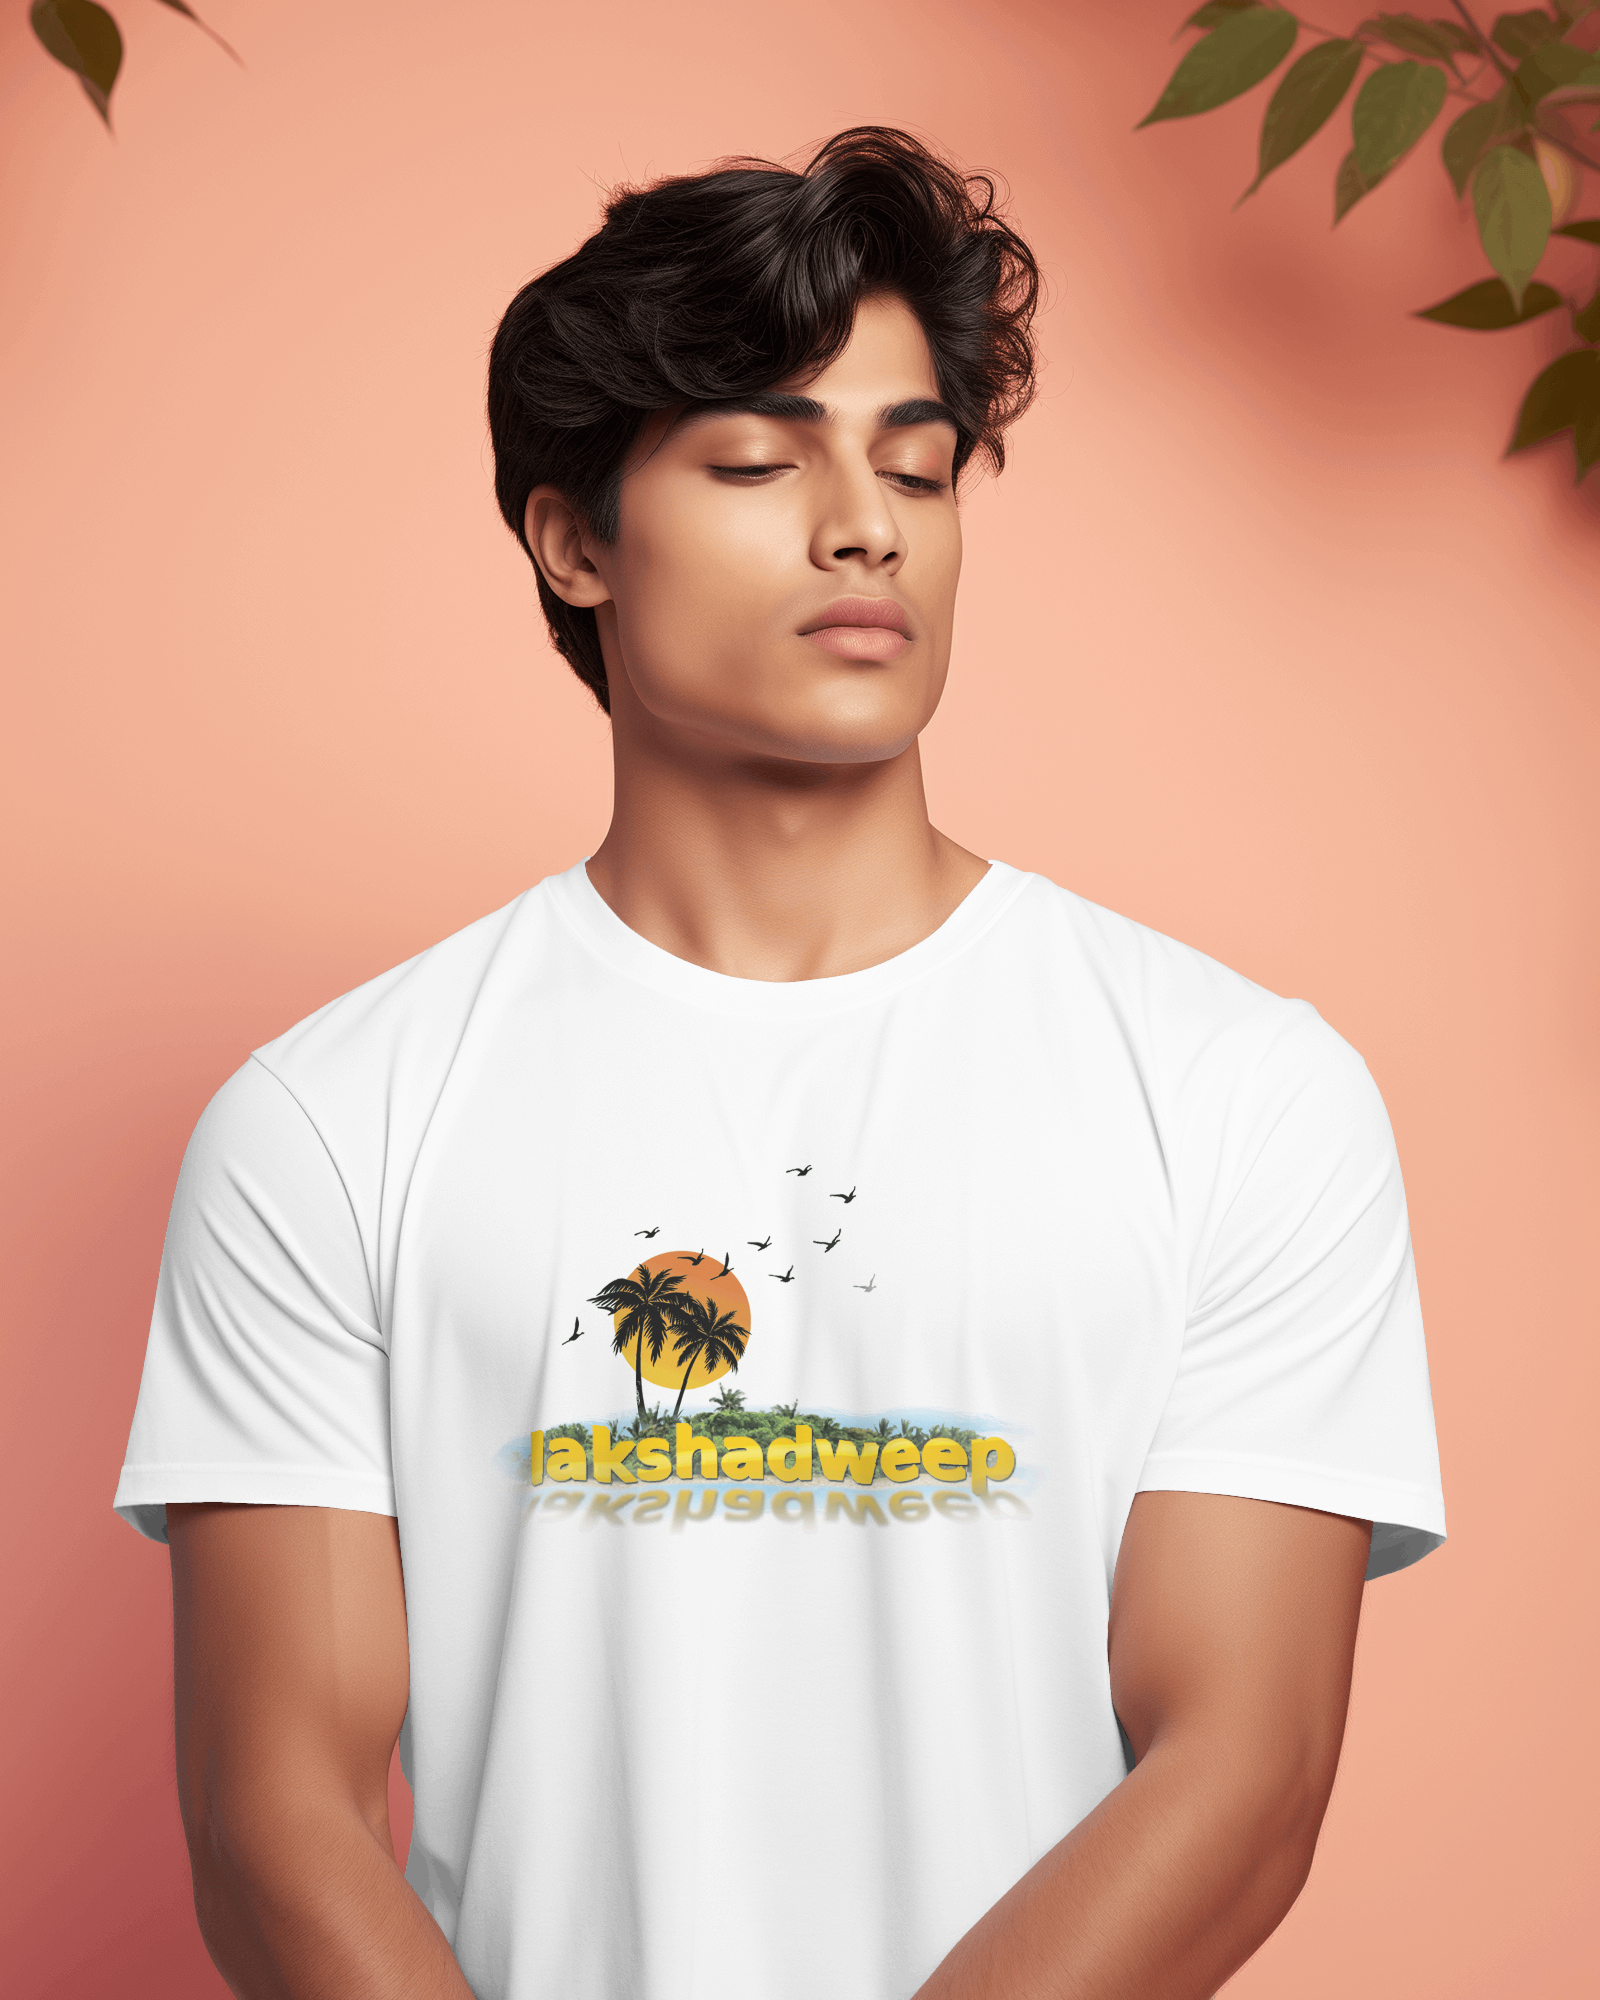 Tshirt for Lakshadweep tour | Bratma